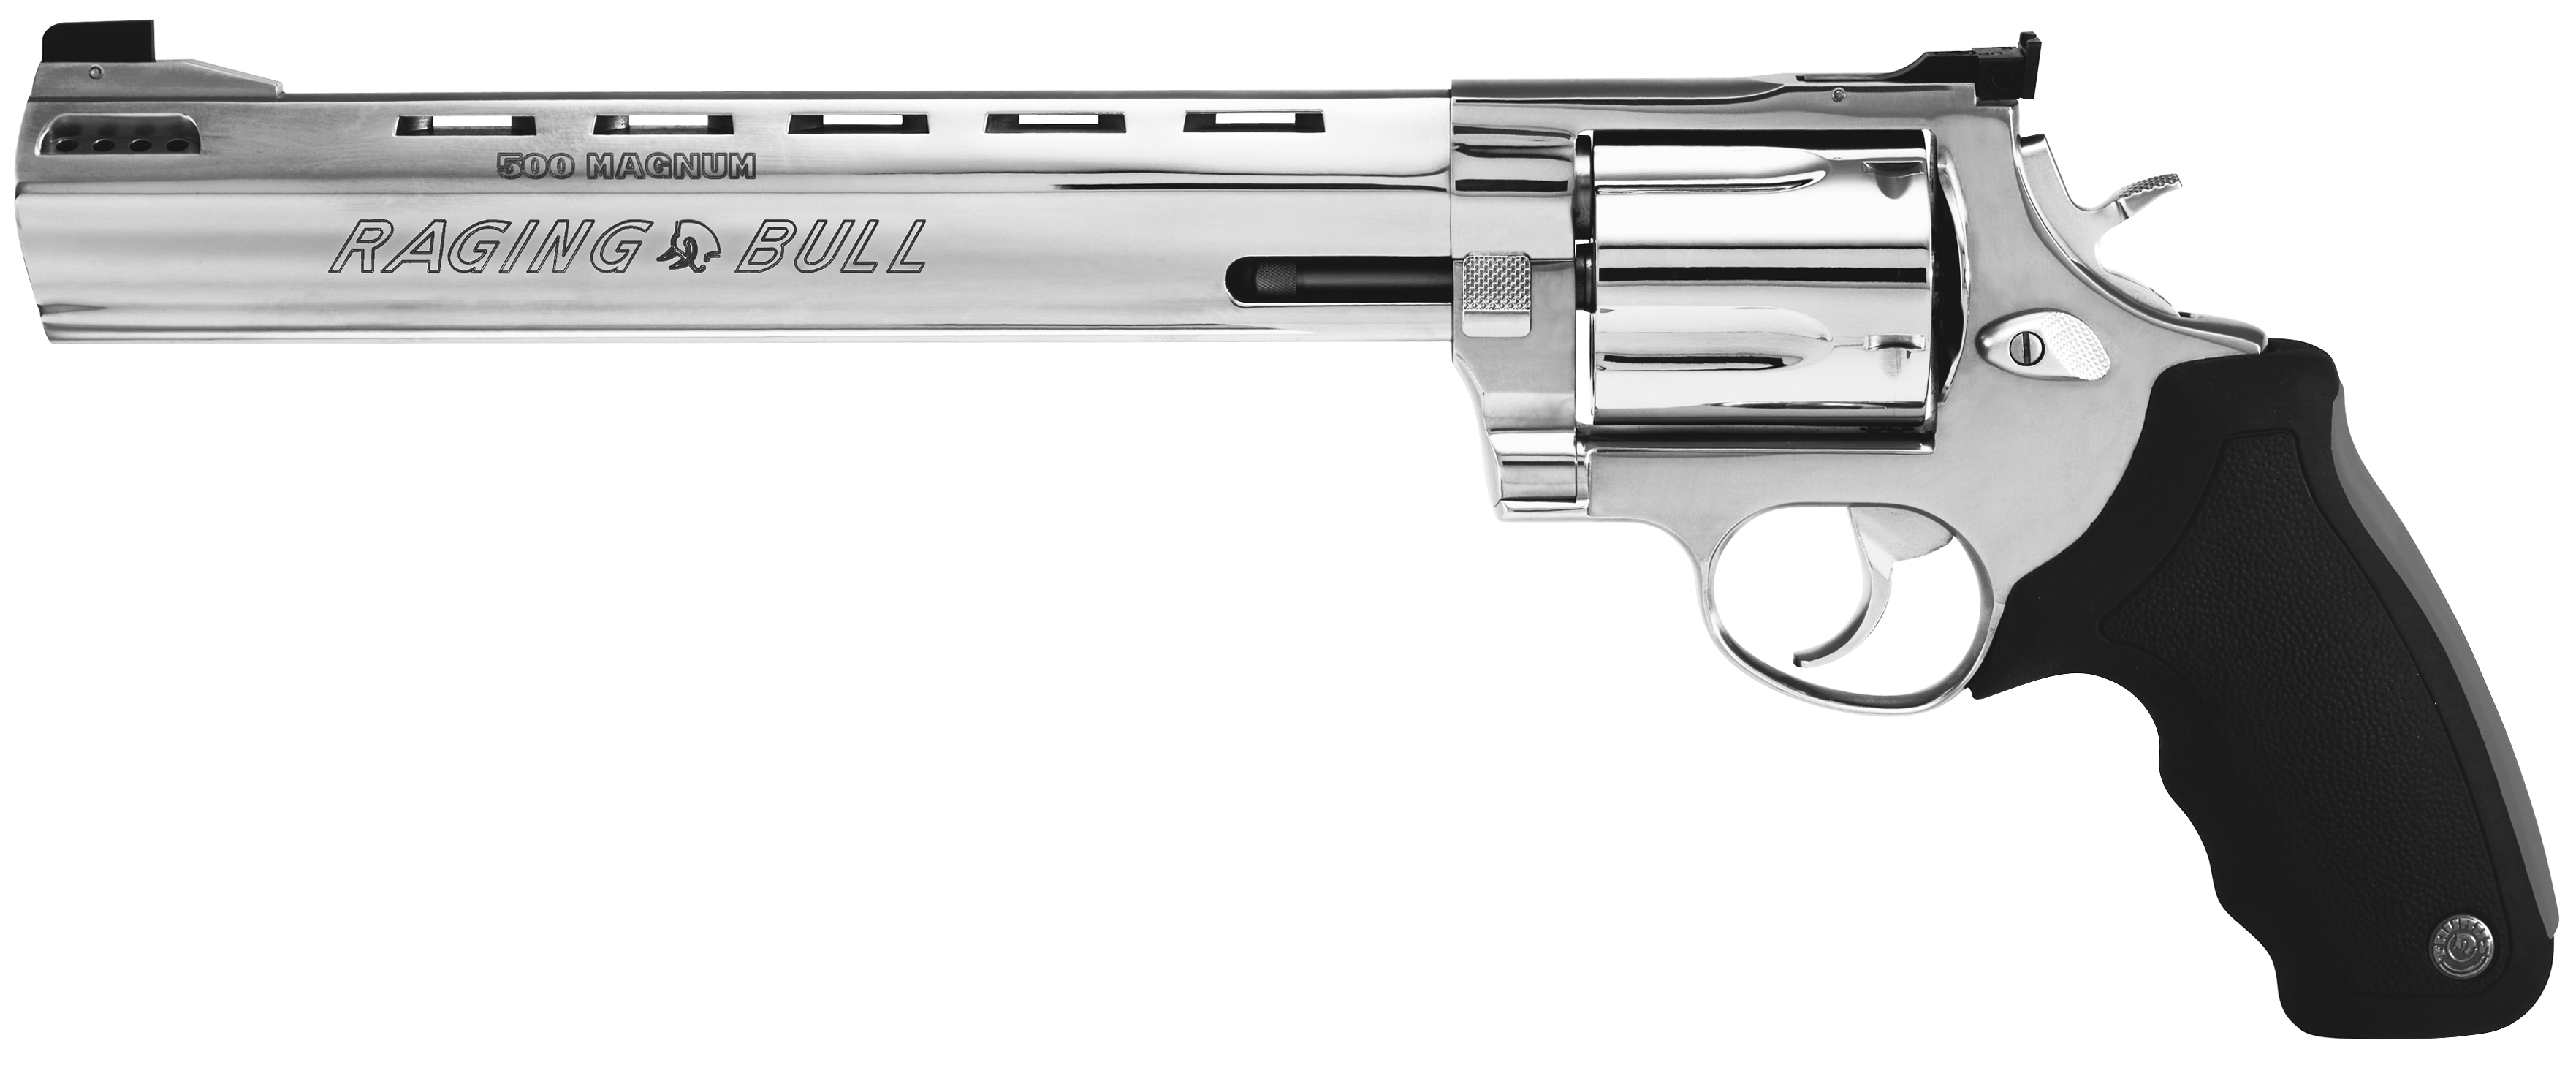 Model 500 Magnum Raging Bull